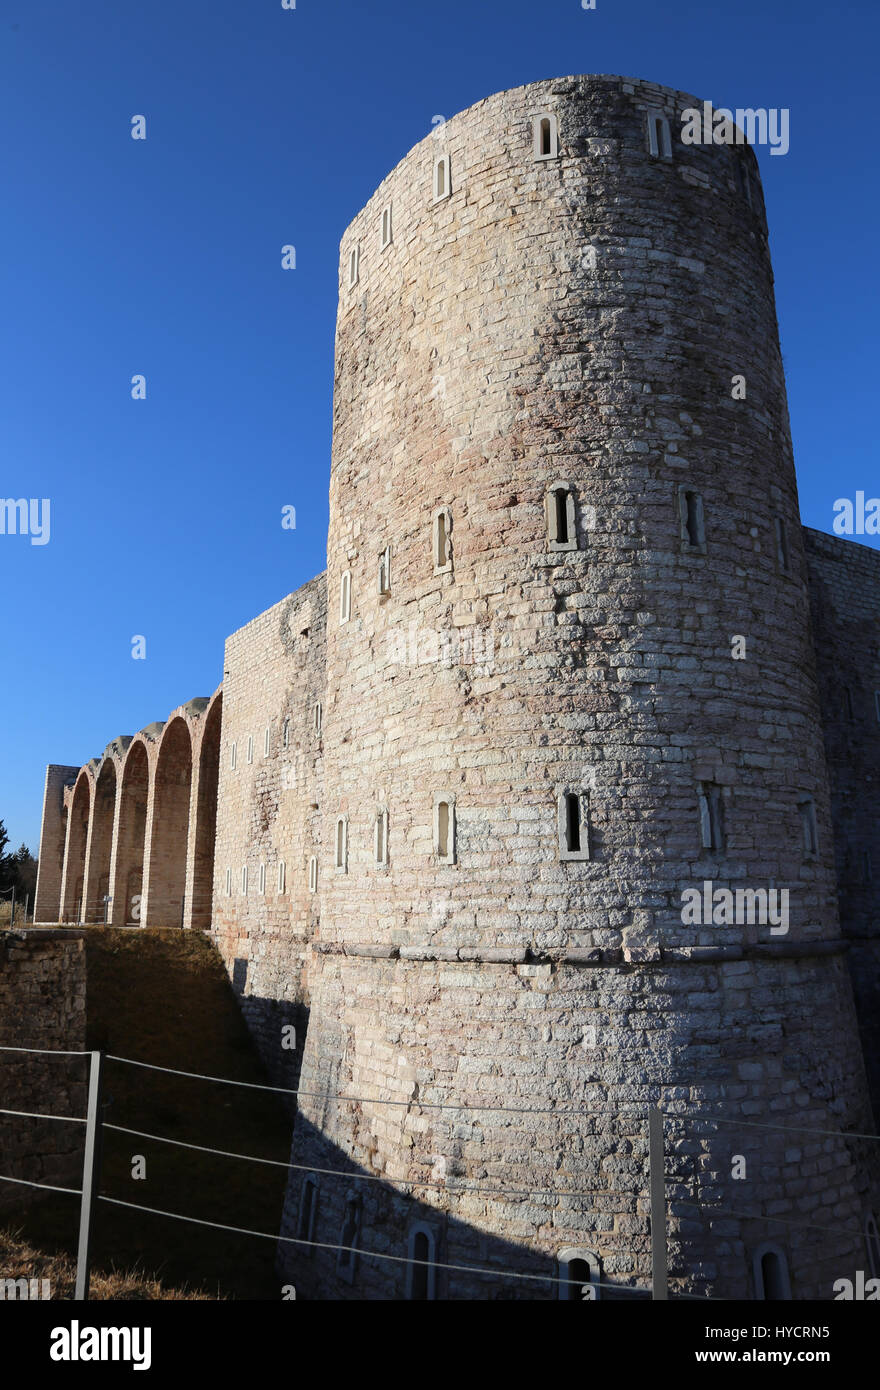 Torre di avvistamento dei ruderi di un antico fortilizio utilizzata dai soldati durante la Prima Guerra Mondiale nei pressi della città di Asiago in Italia settentrionale Foto Stock